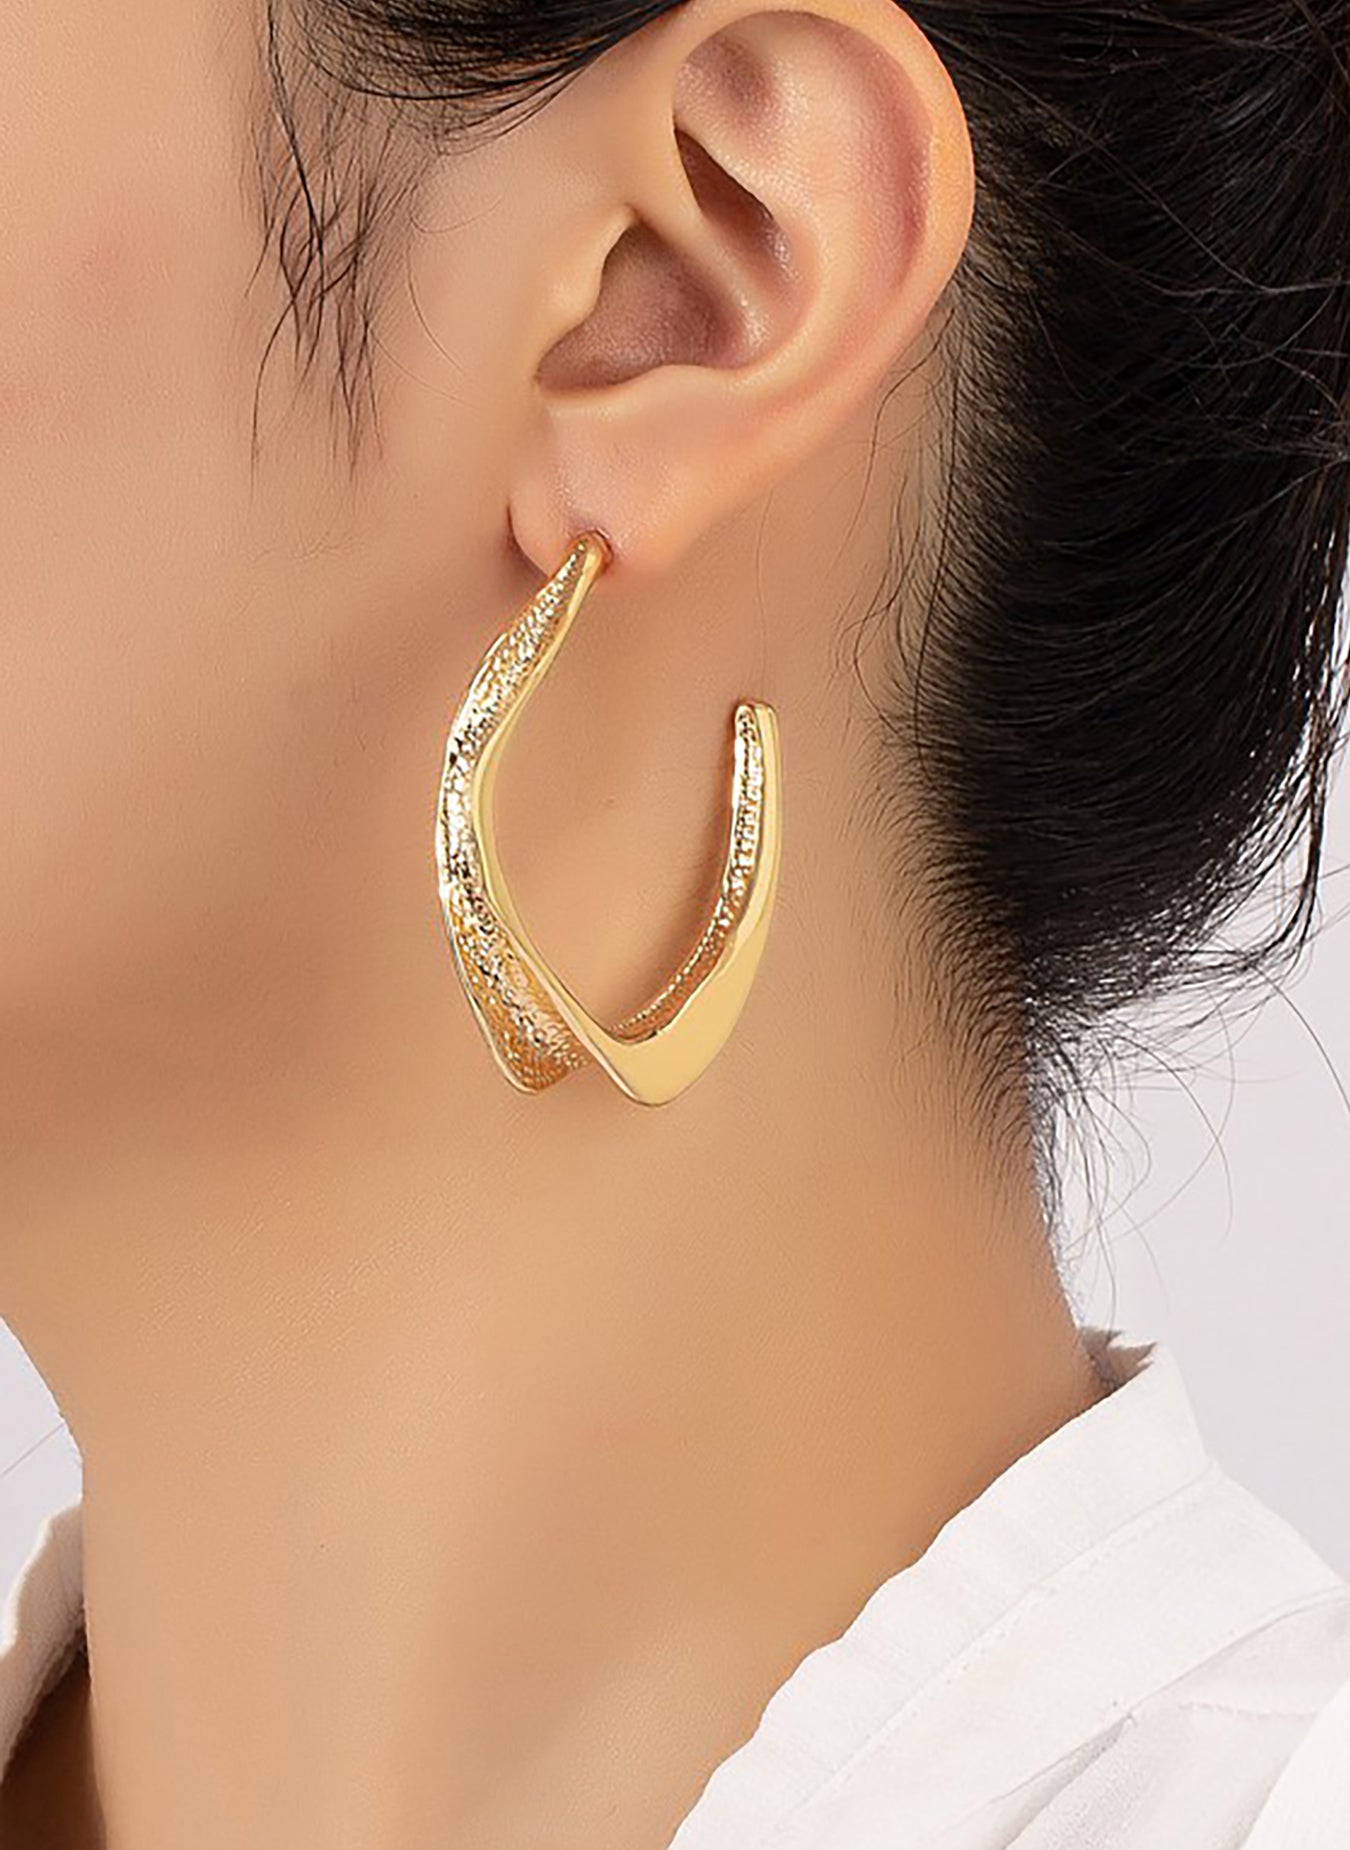 Twisted Hoop Earrings - Gold